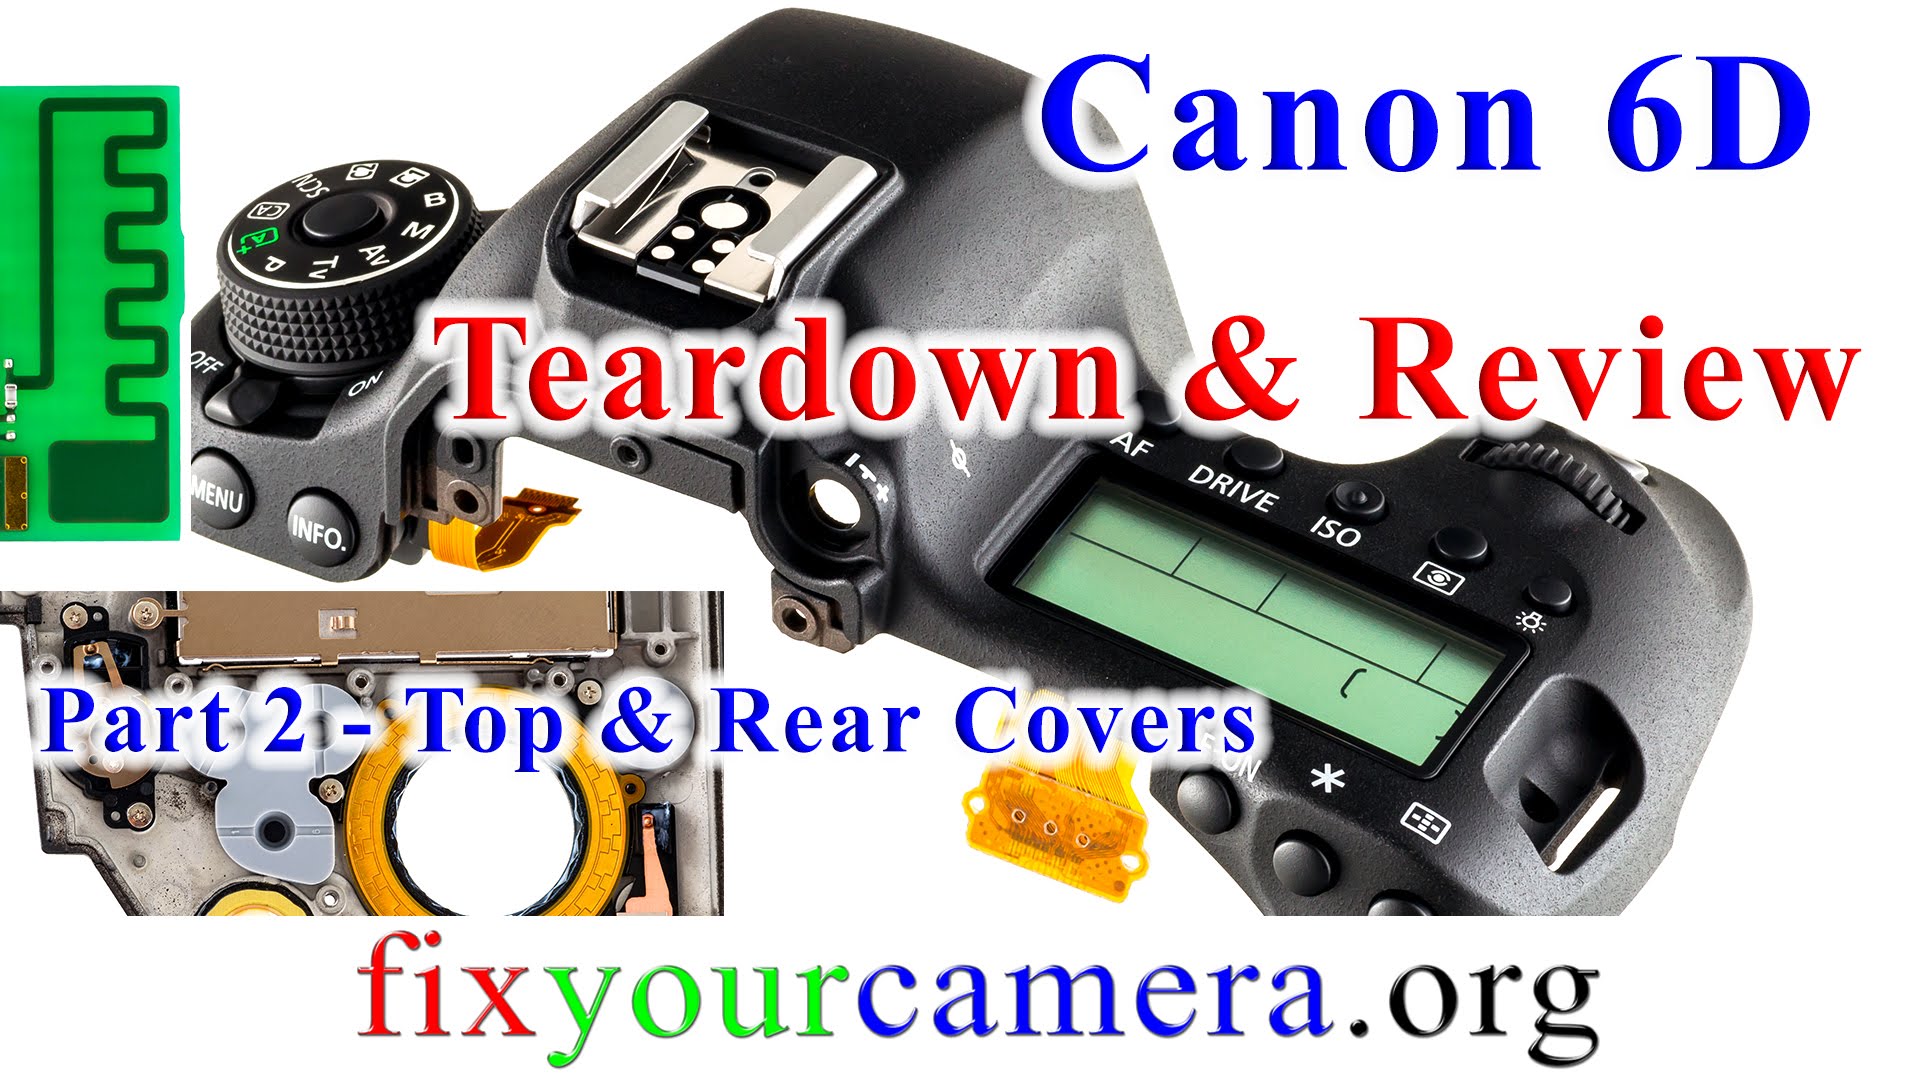 Canon EOS 6D Camera Teardown and Review *part 2/5* FM Radio, Top & Rear Cover & Canon MODE DIAL CAP